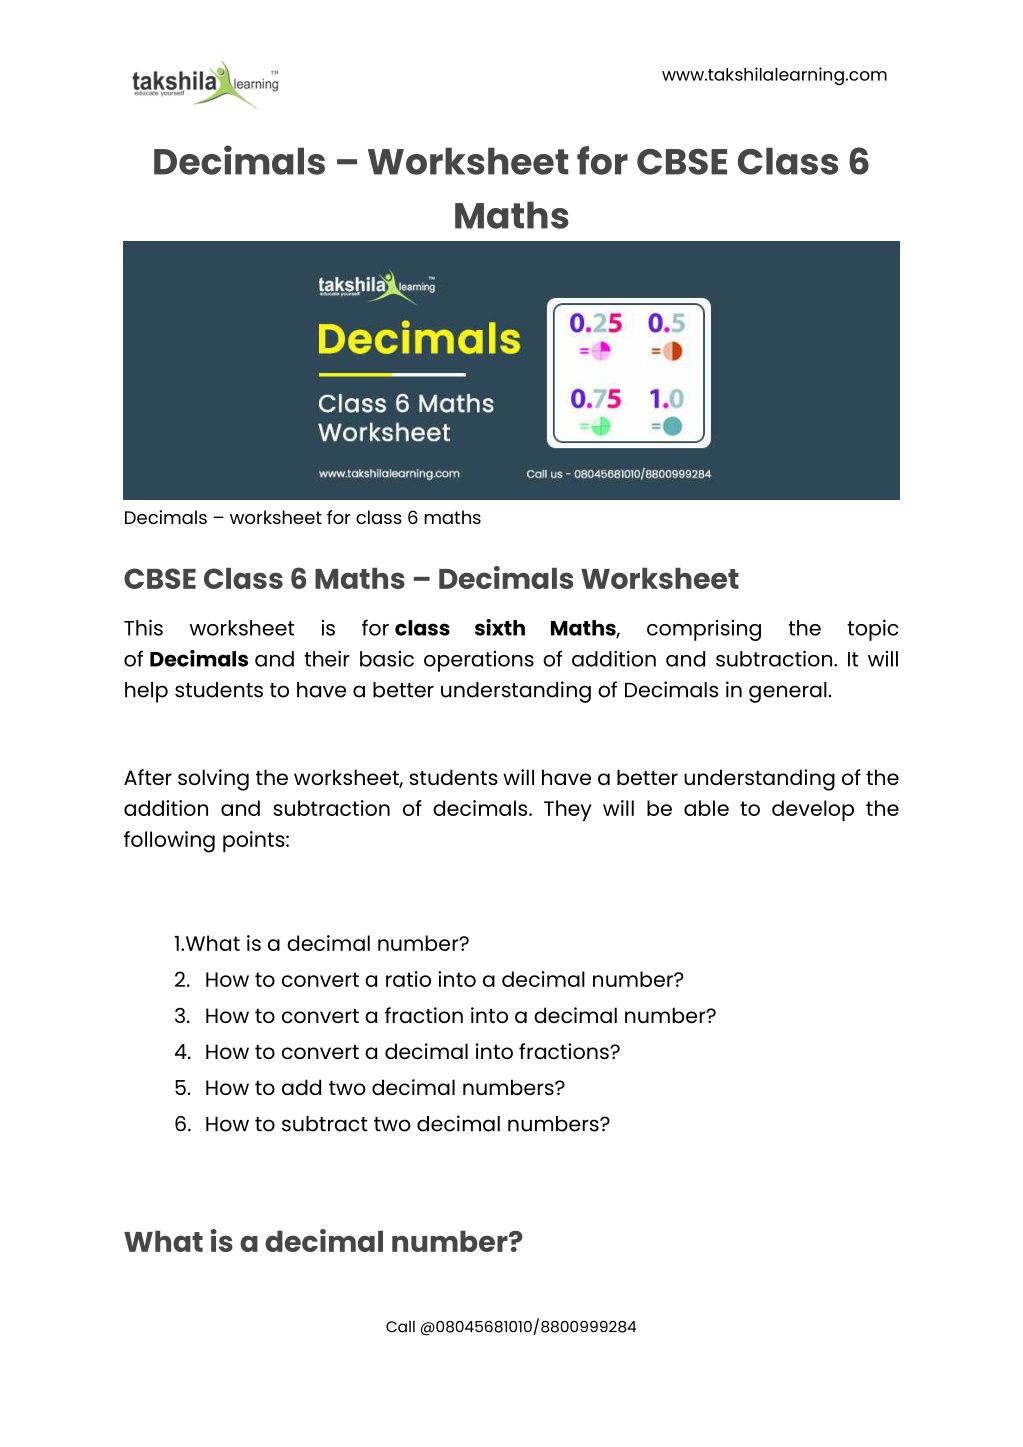 ppt-cbse-class-6-maths-decimals-worksheet-for-class-6-maths